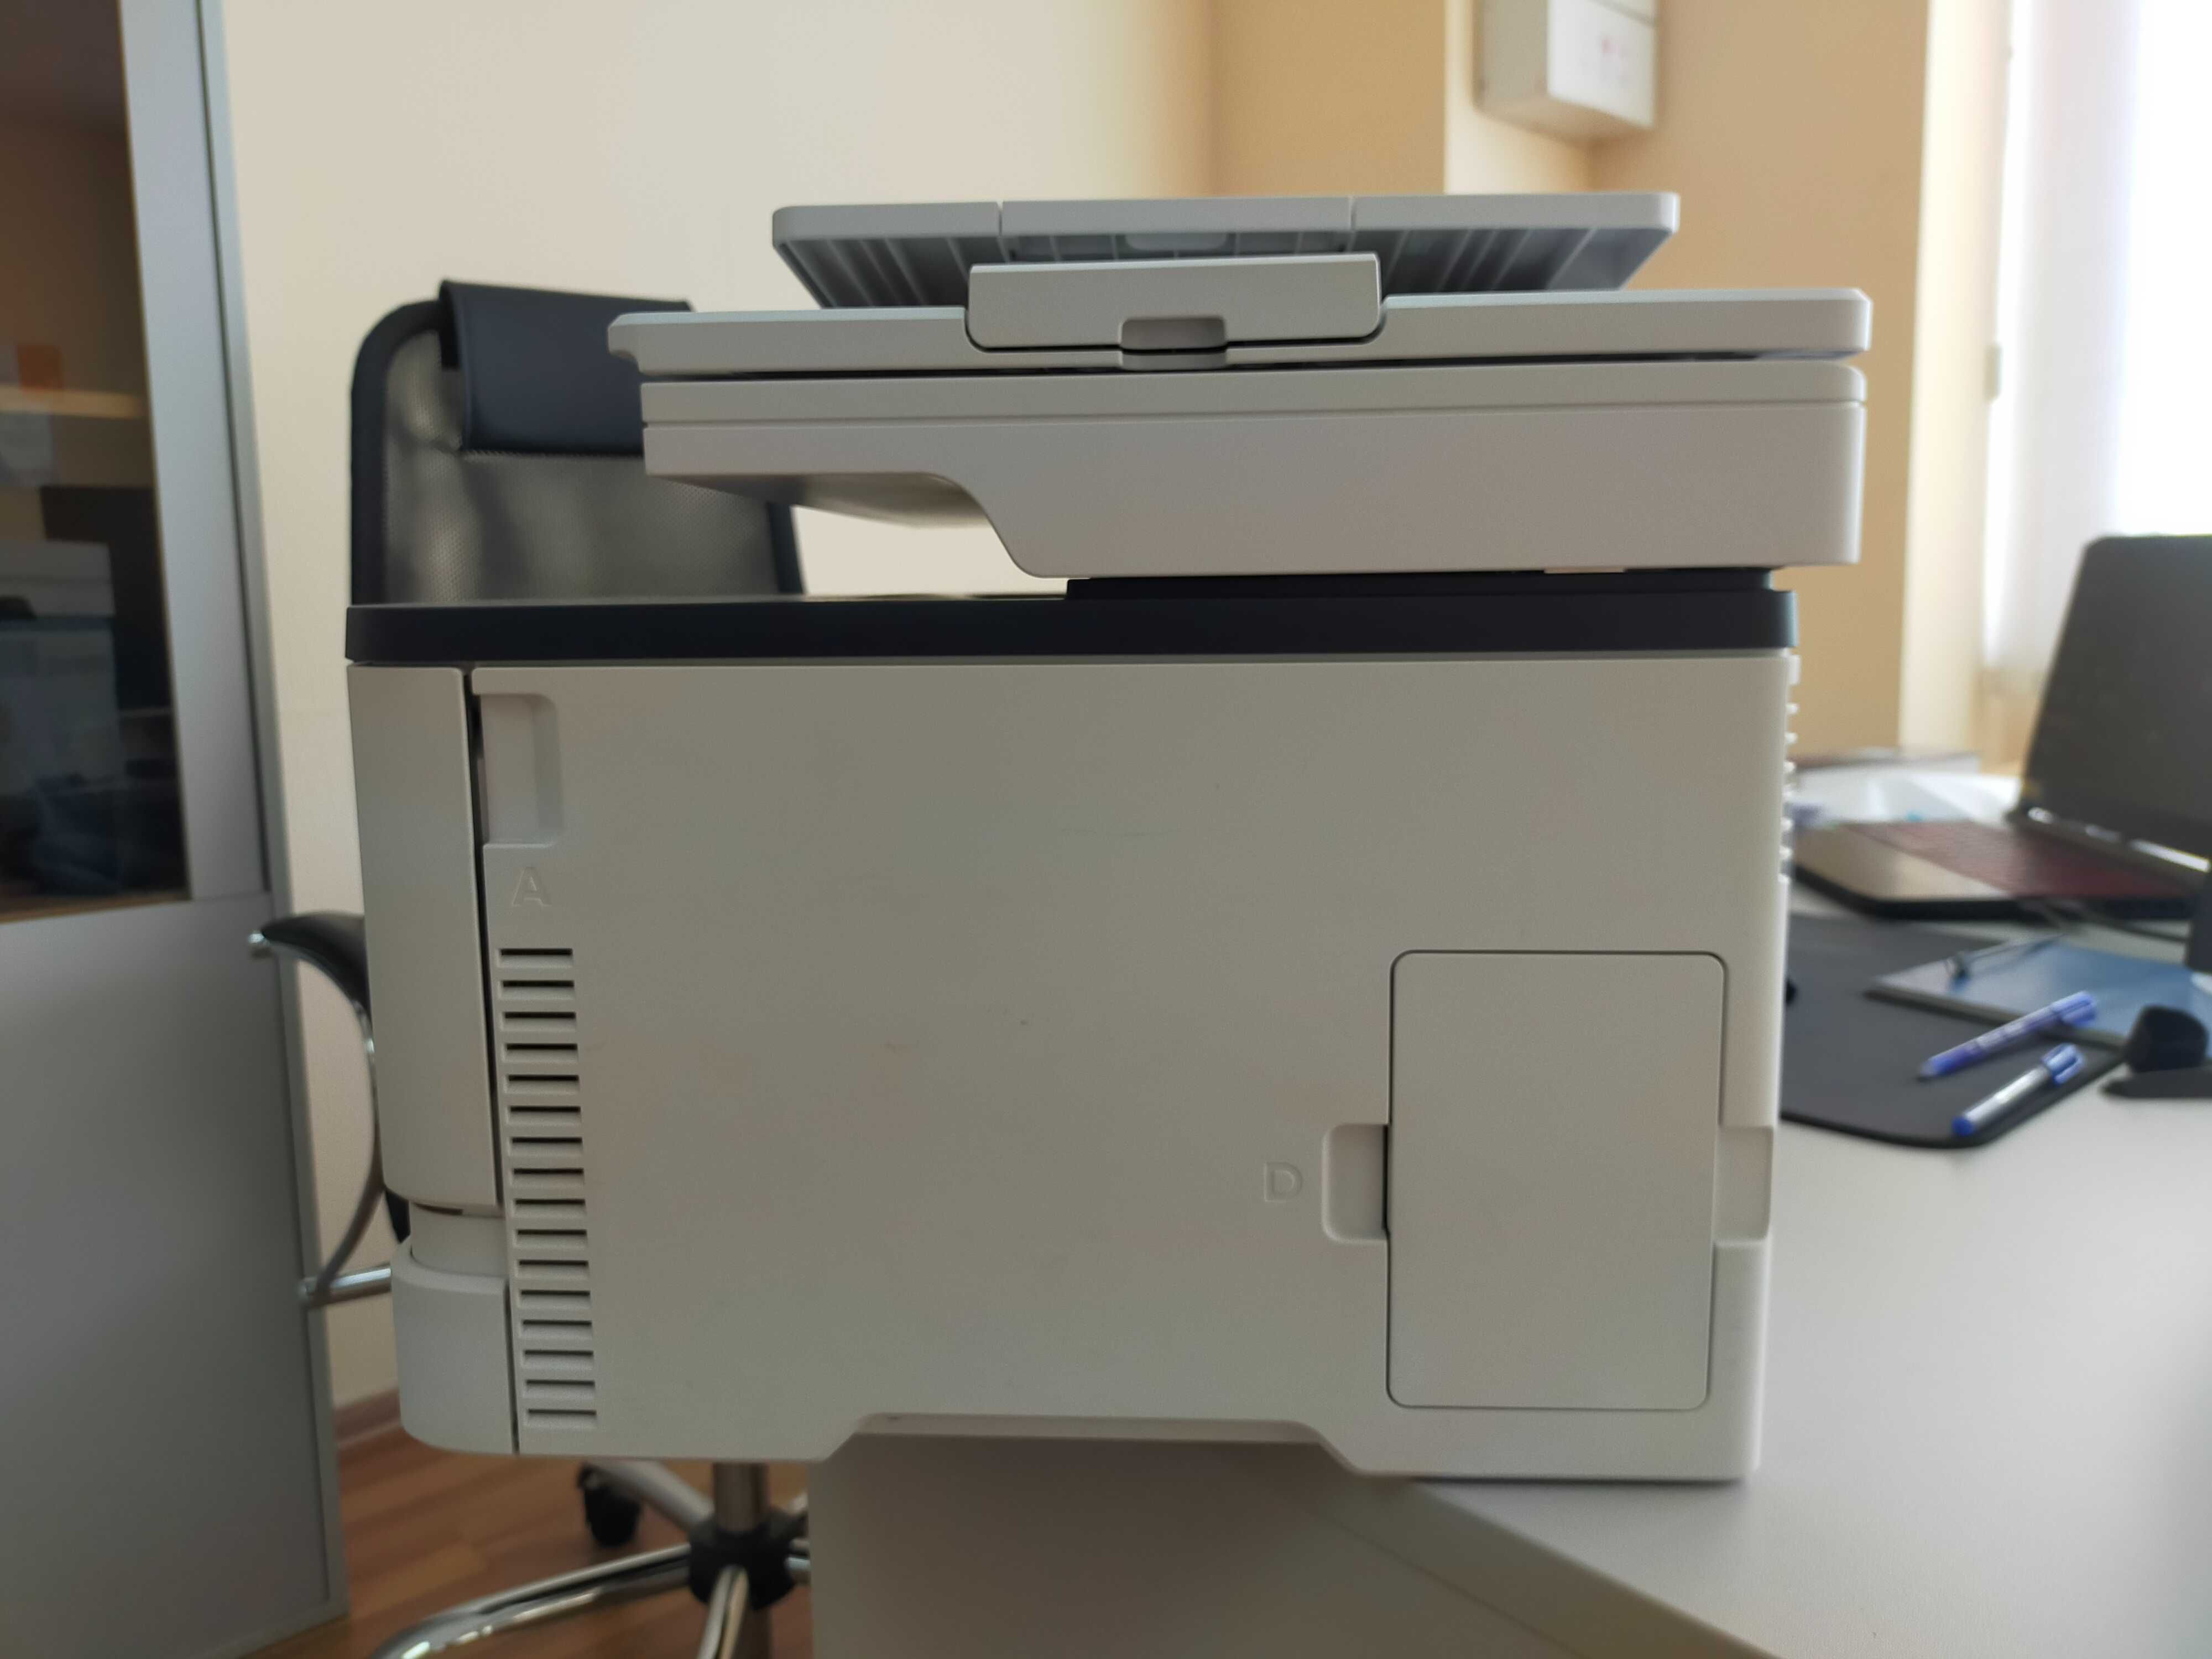 МФУ Xerox B225, A4, print 600x600dpi, scan 1200x1200dpi